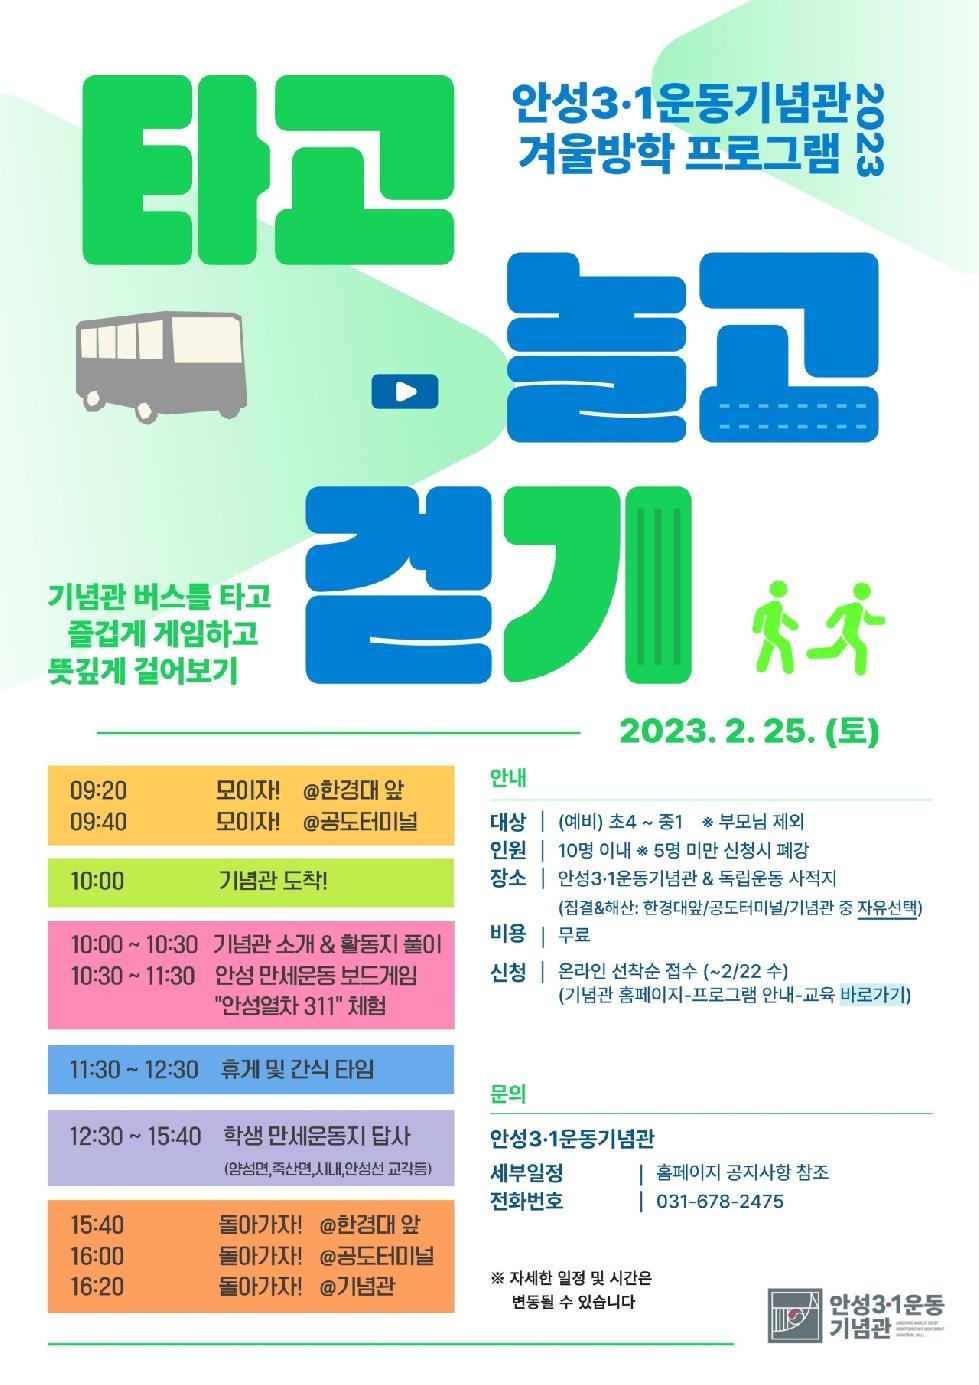 안성3.1운동기념관, 겨울방학 프로그램 “타고 놀고 걷기” 모집